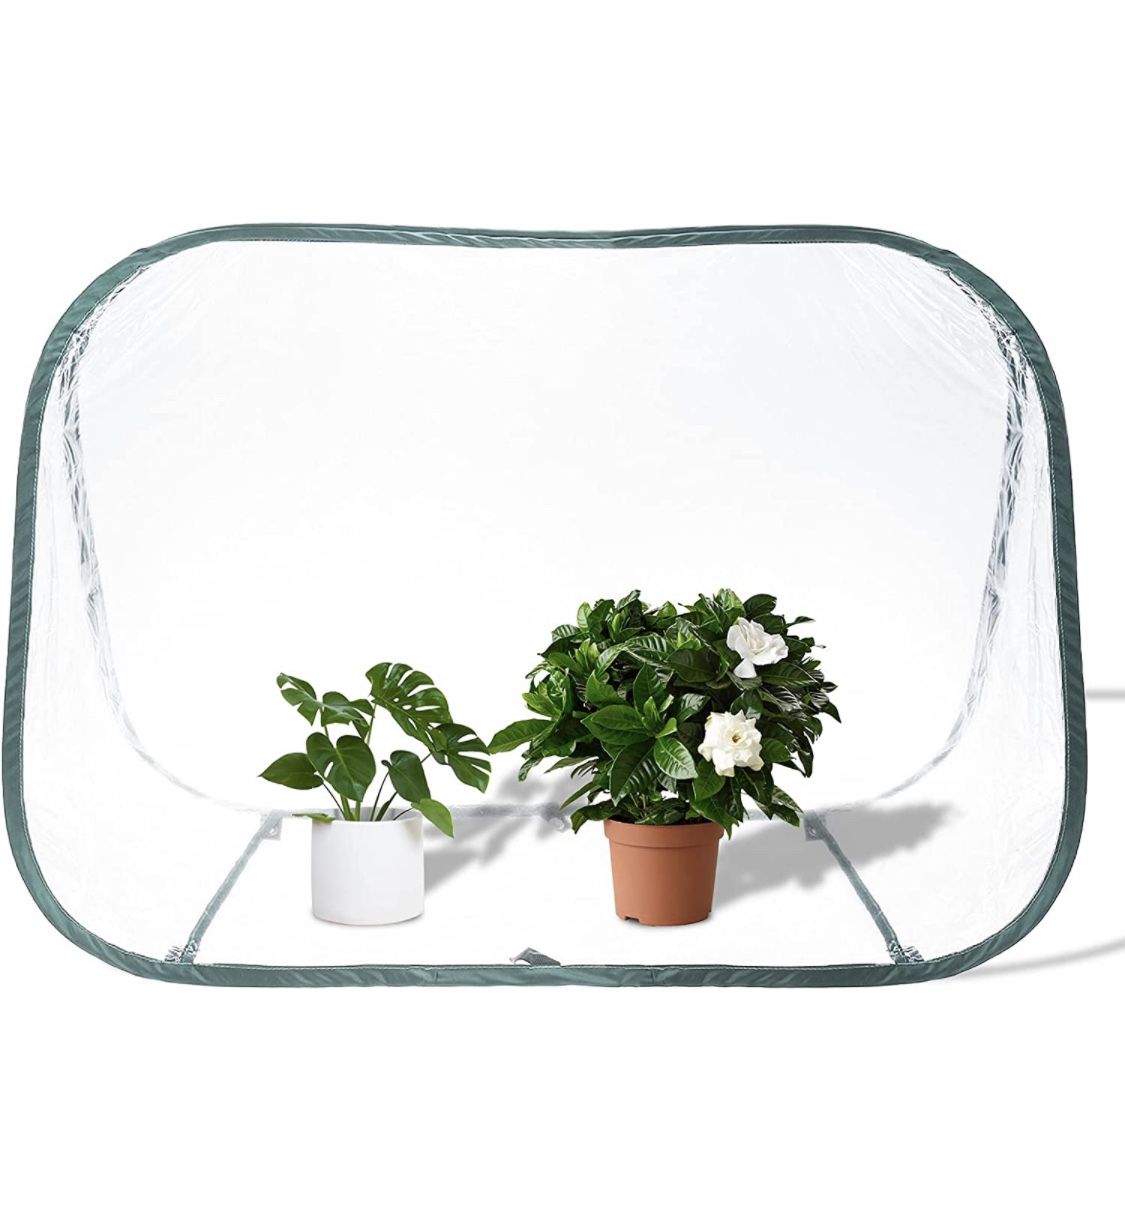 SanSanYa Mini Pop up Greenhouse 35.4"x20.4"x24.4" Portable Mini Greenhouse Tent, Foldable Plant House, Small Backyard PVC Greenhouse Cover Flower Shel